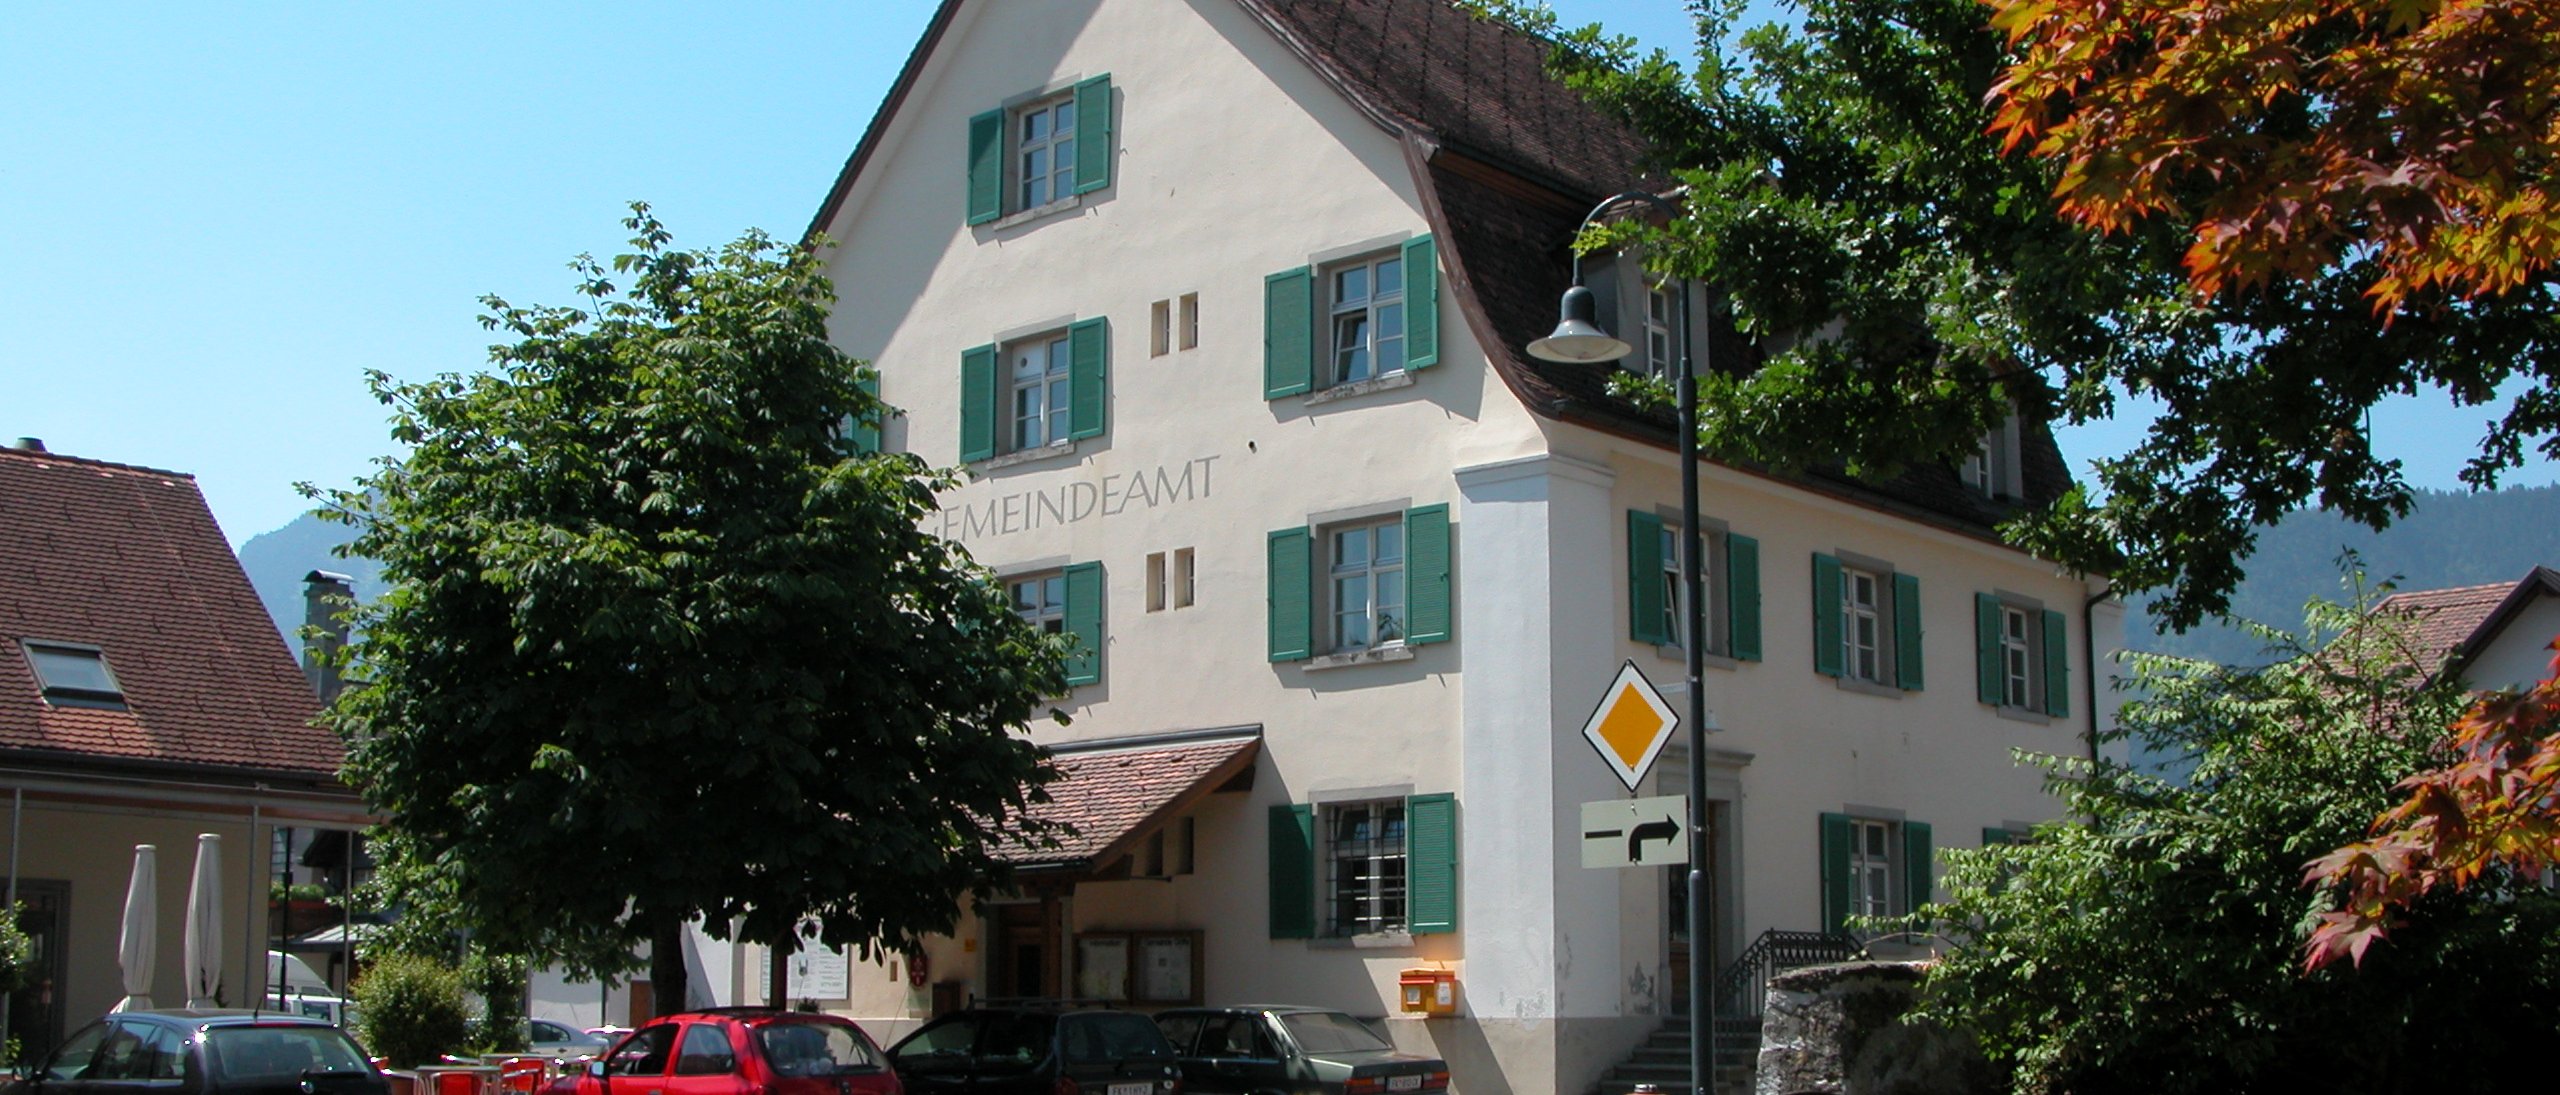 Geschichte Gemeindeamt